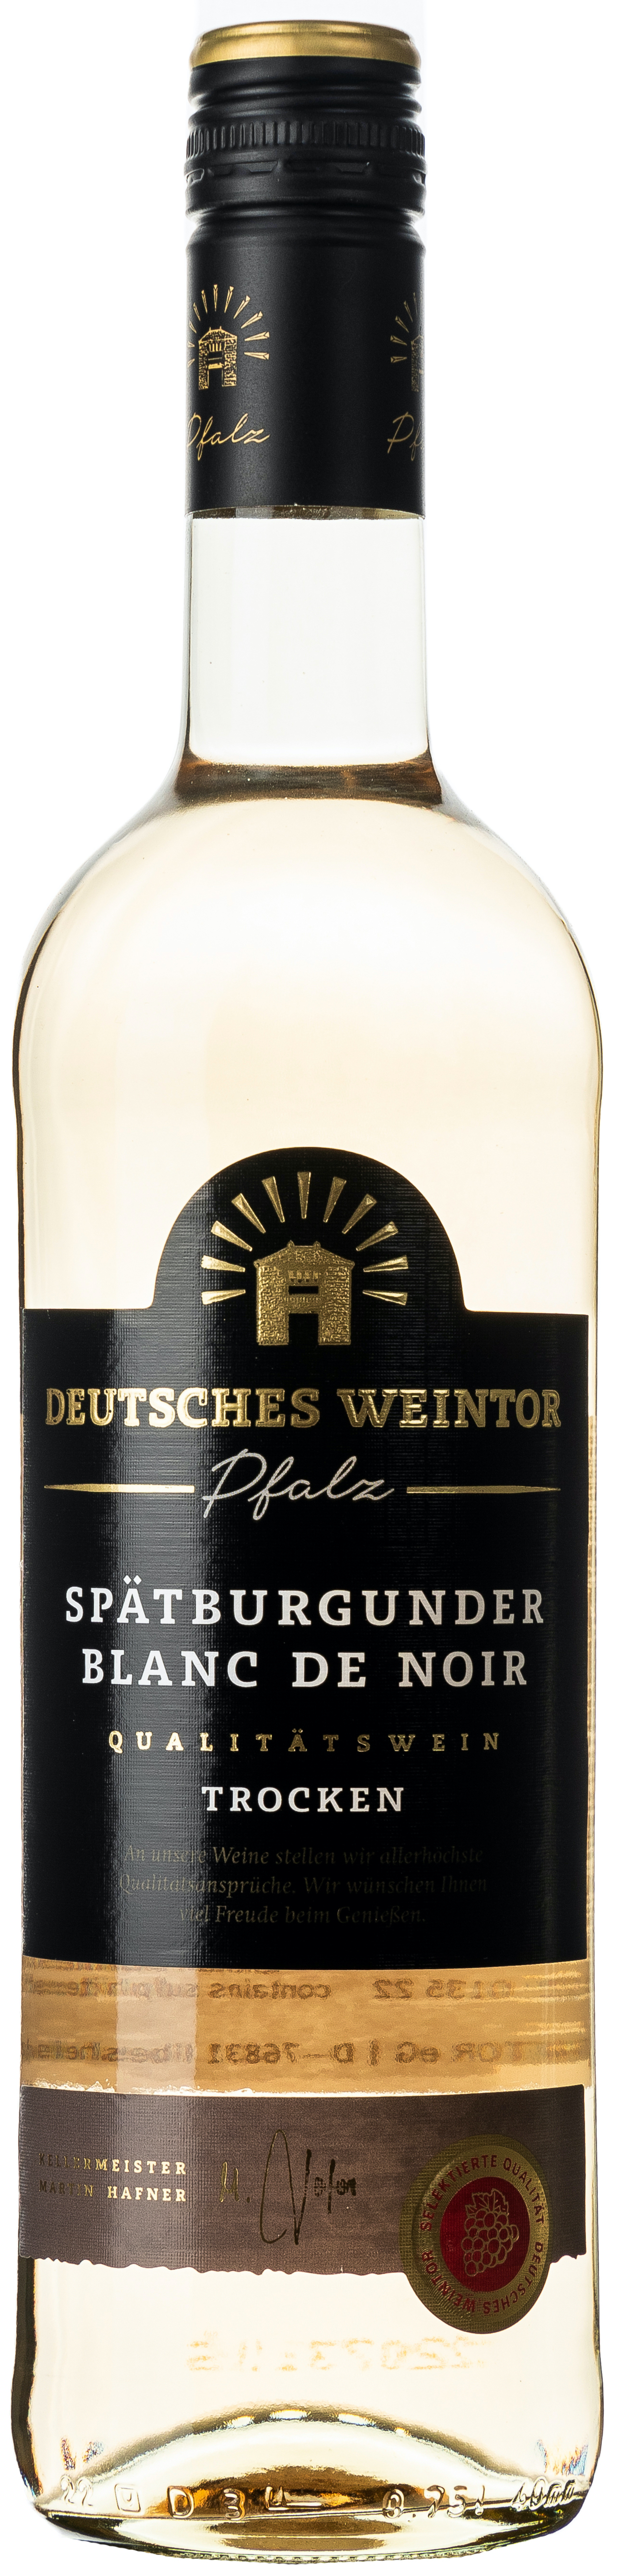 Deutsches Weintor Spätburgunder Blanc de Noir trocken 12,5% vol. 0,75L